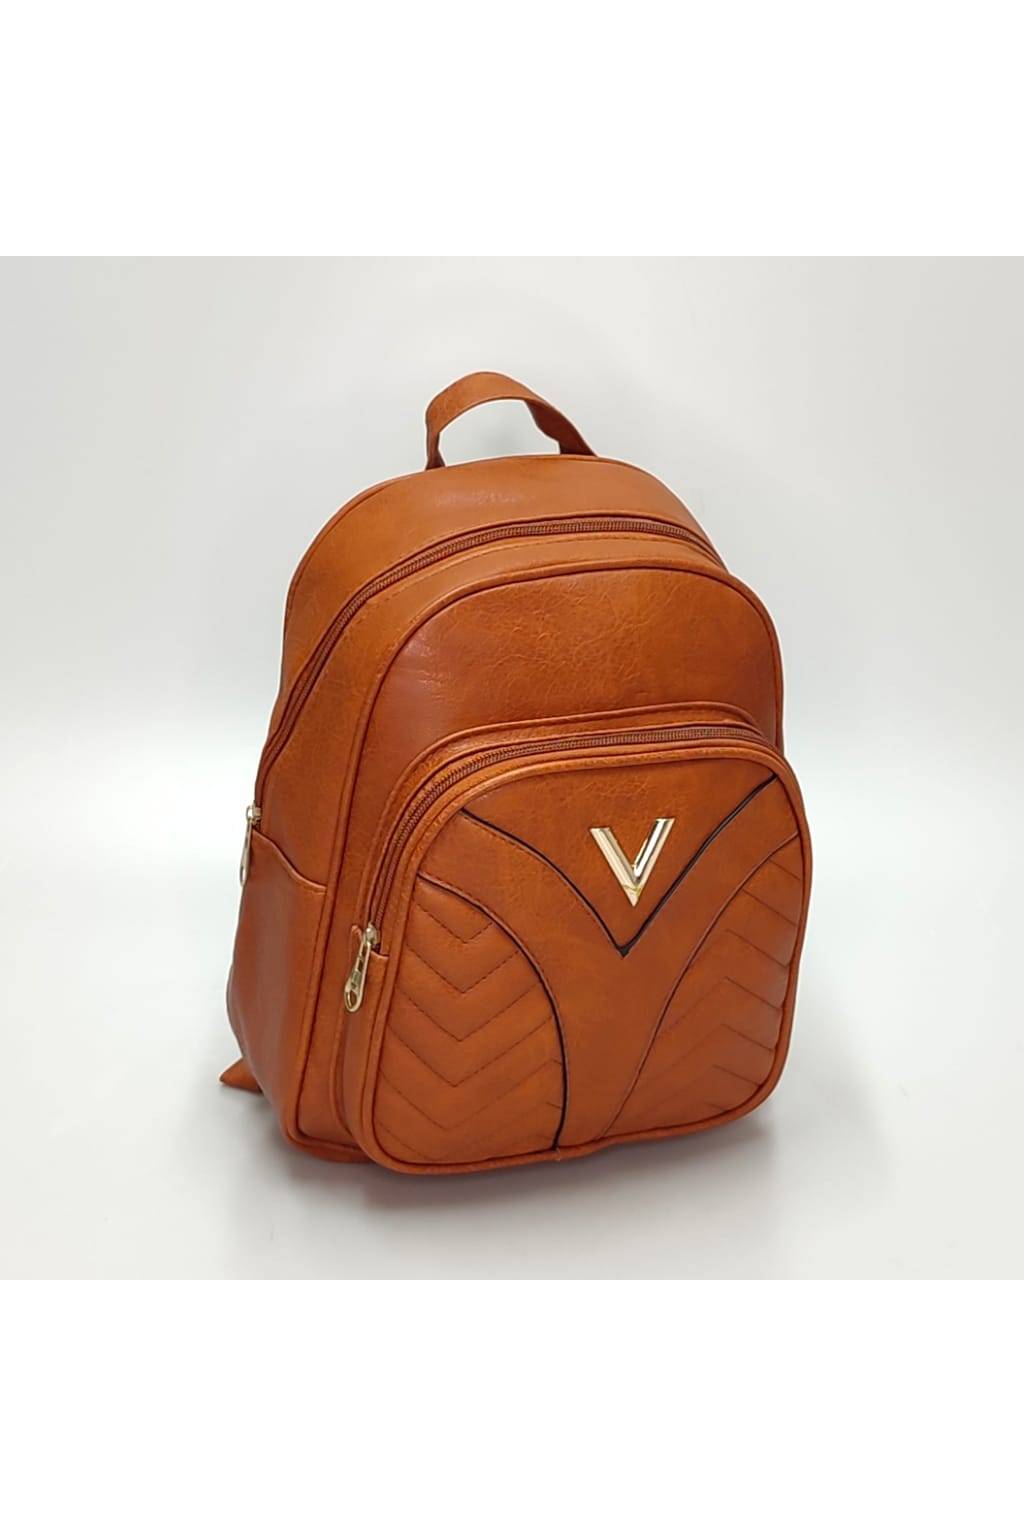 Dámsky ruksak 8151 hnedý www.kabelky vypredaj (20)